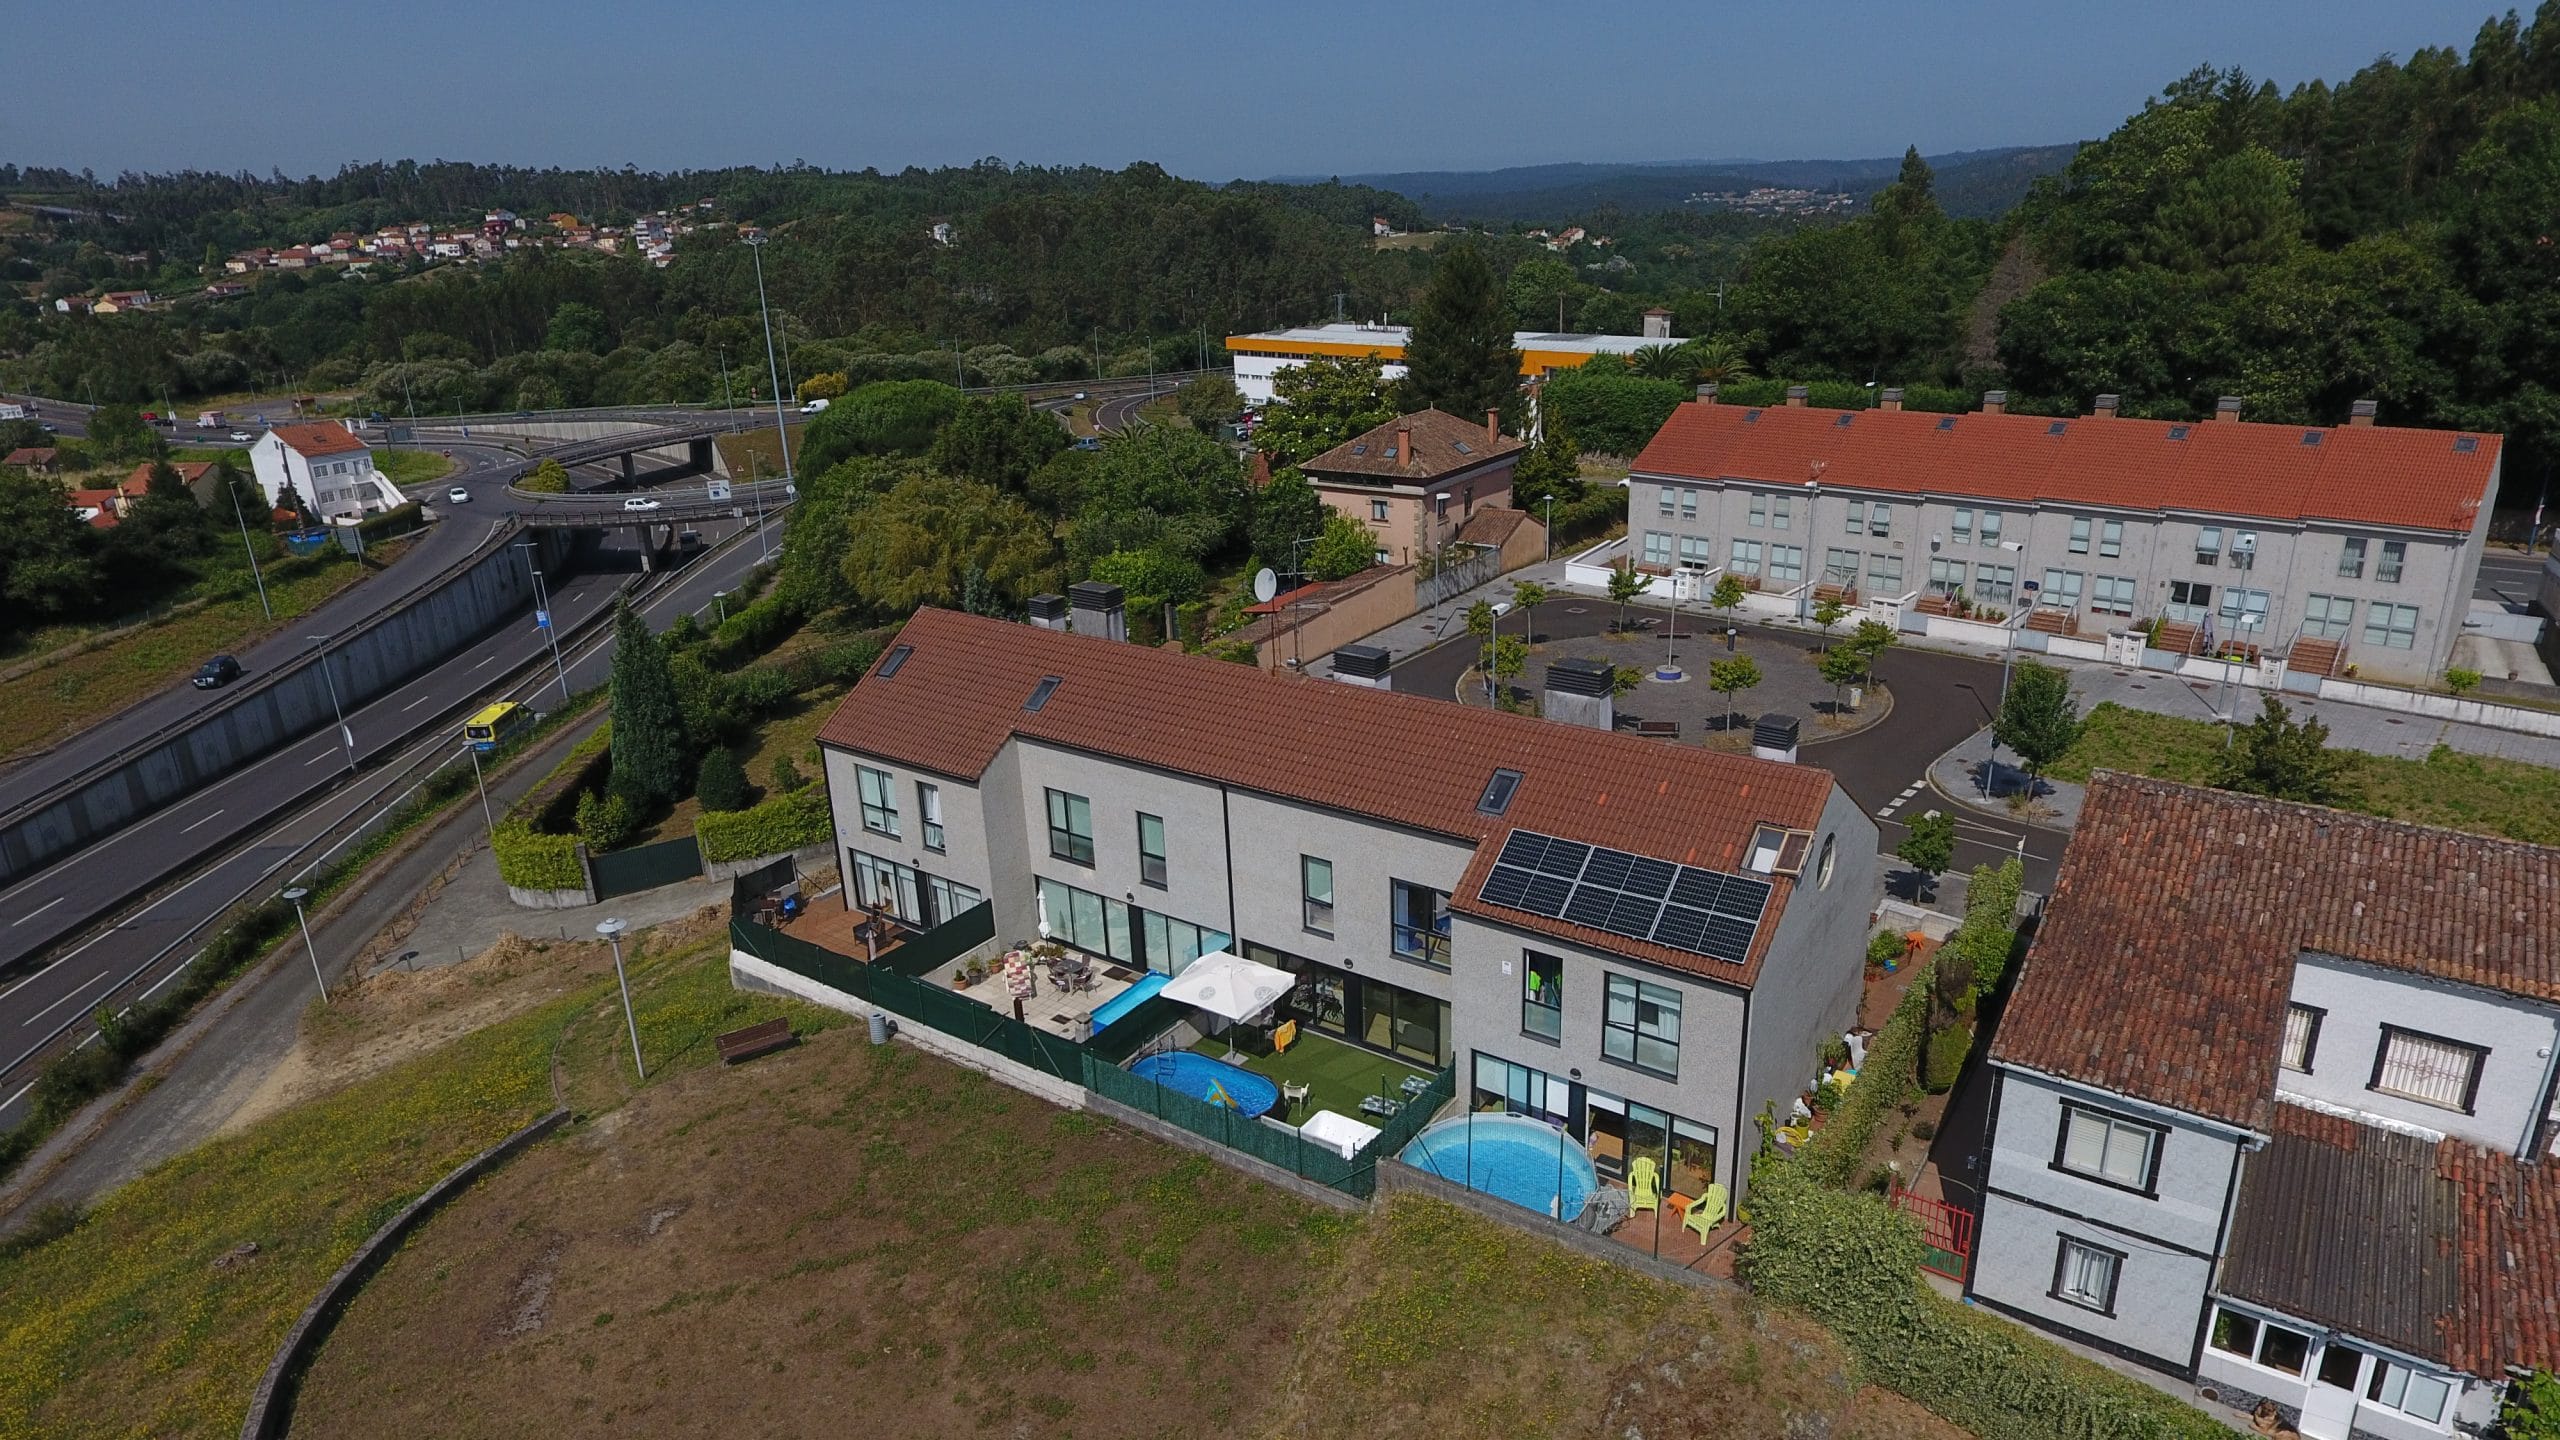 Instalación fotovoltaica para autoconsumo vivienda unifamiliar